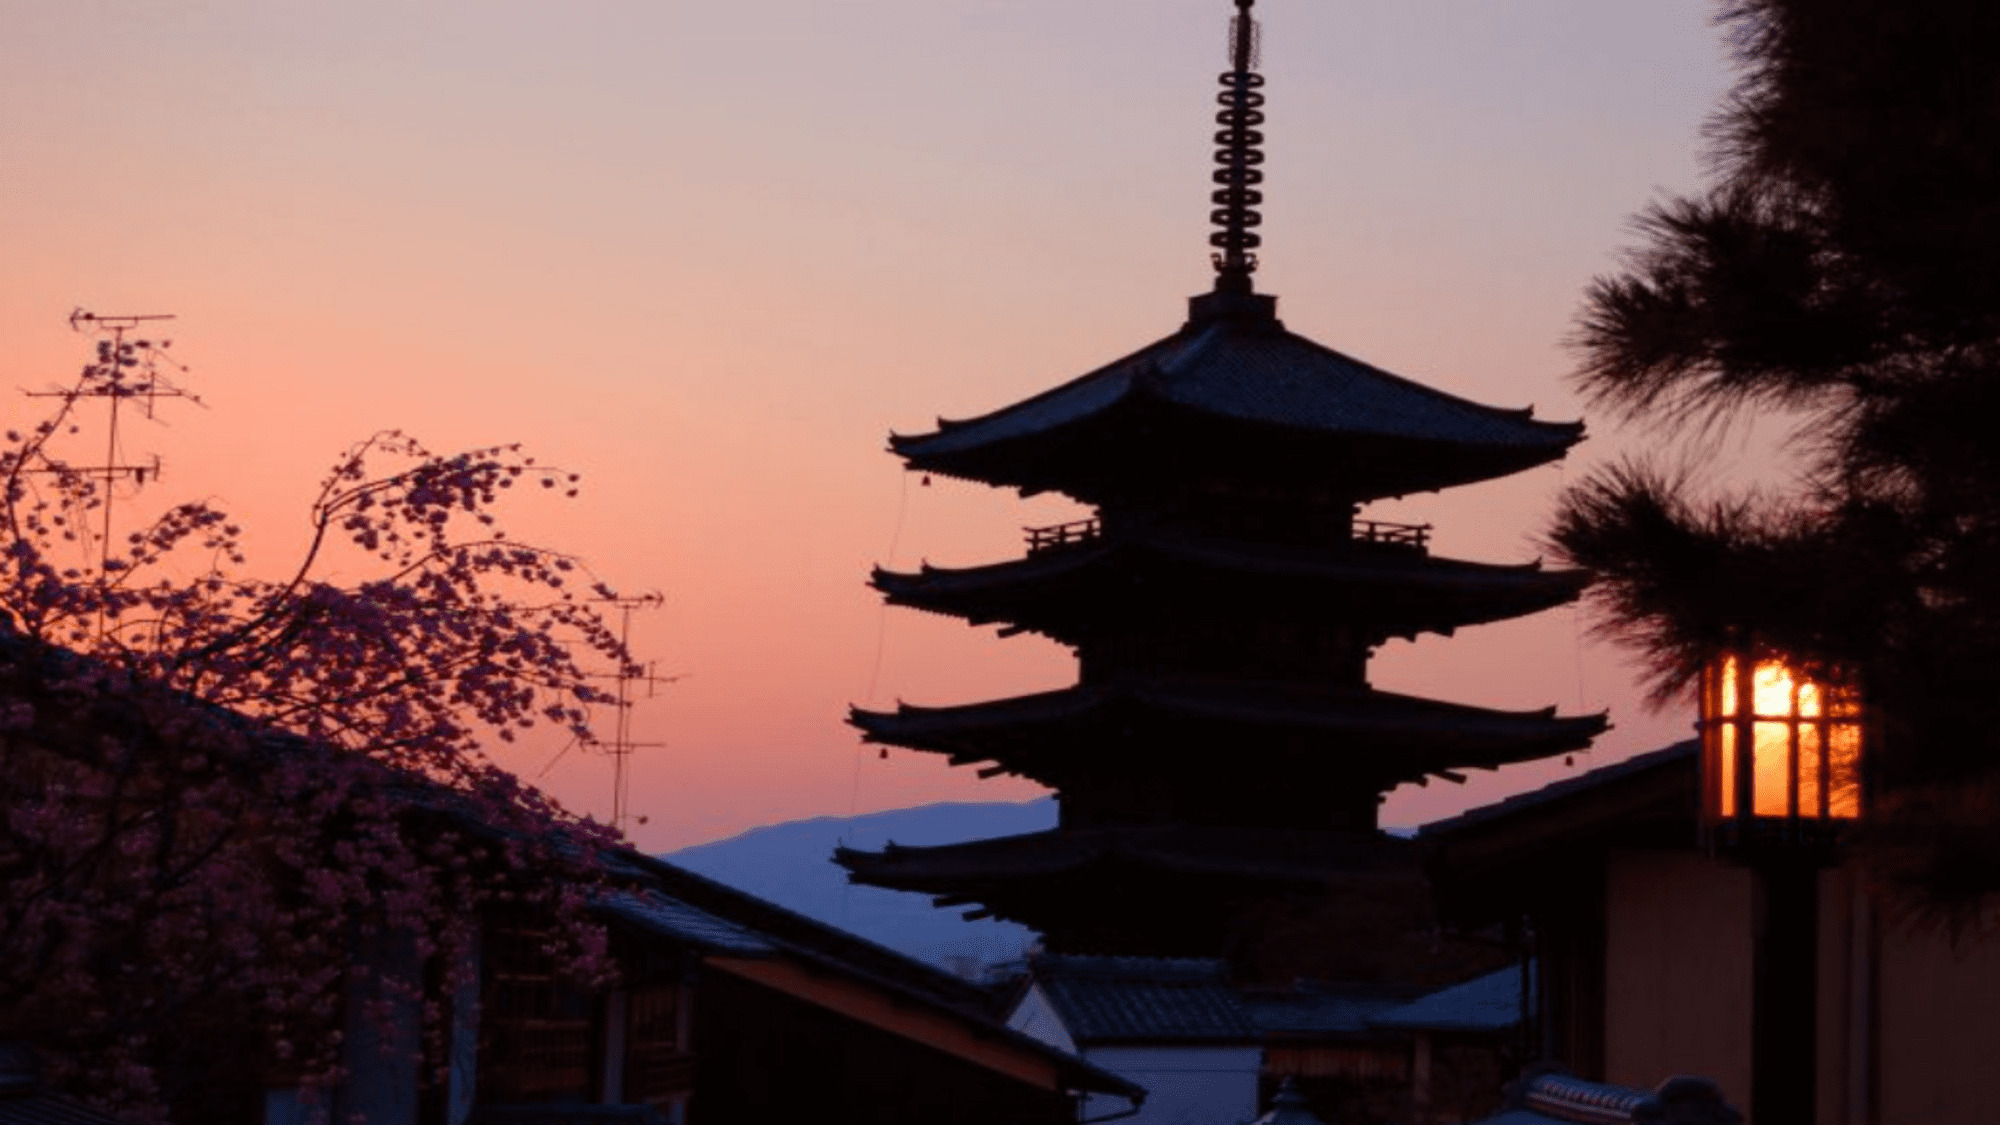 【清水寺の夕暮れ】ドラマチックな夕焼け空を背景に、シルエットになった塔は風情溢れる景色です。